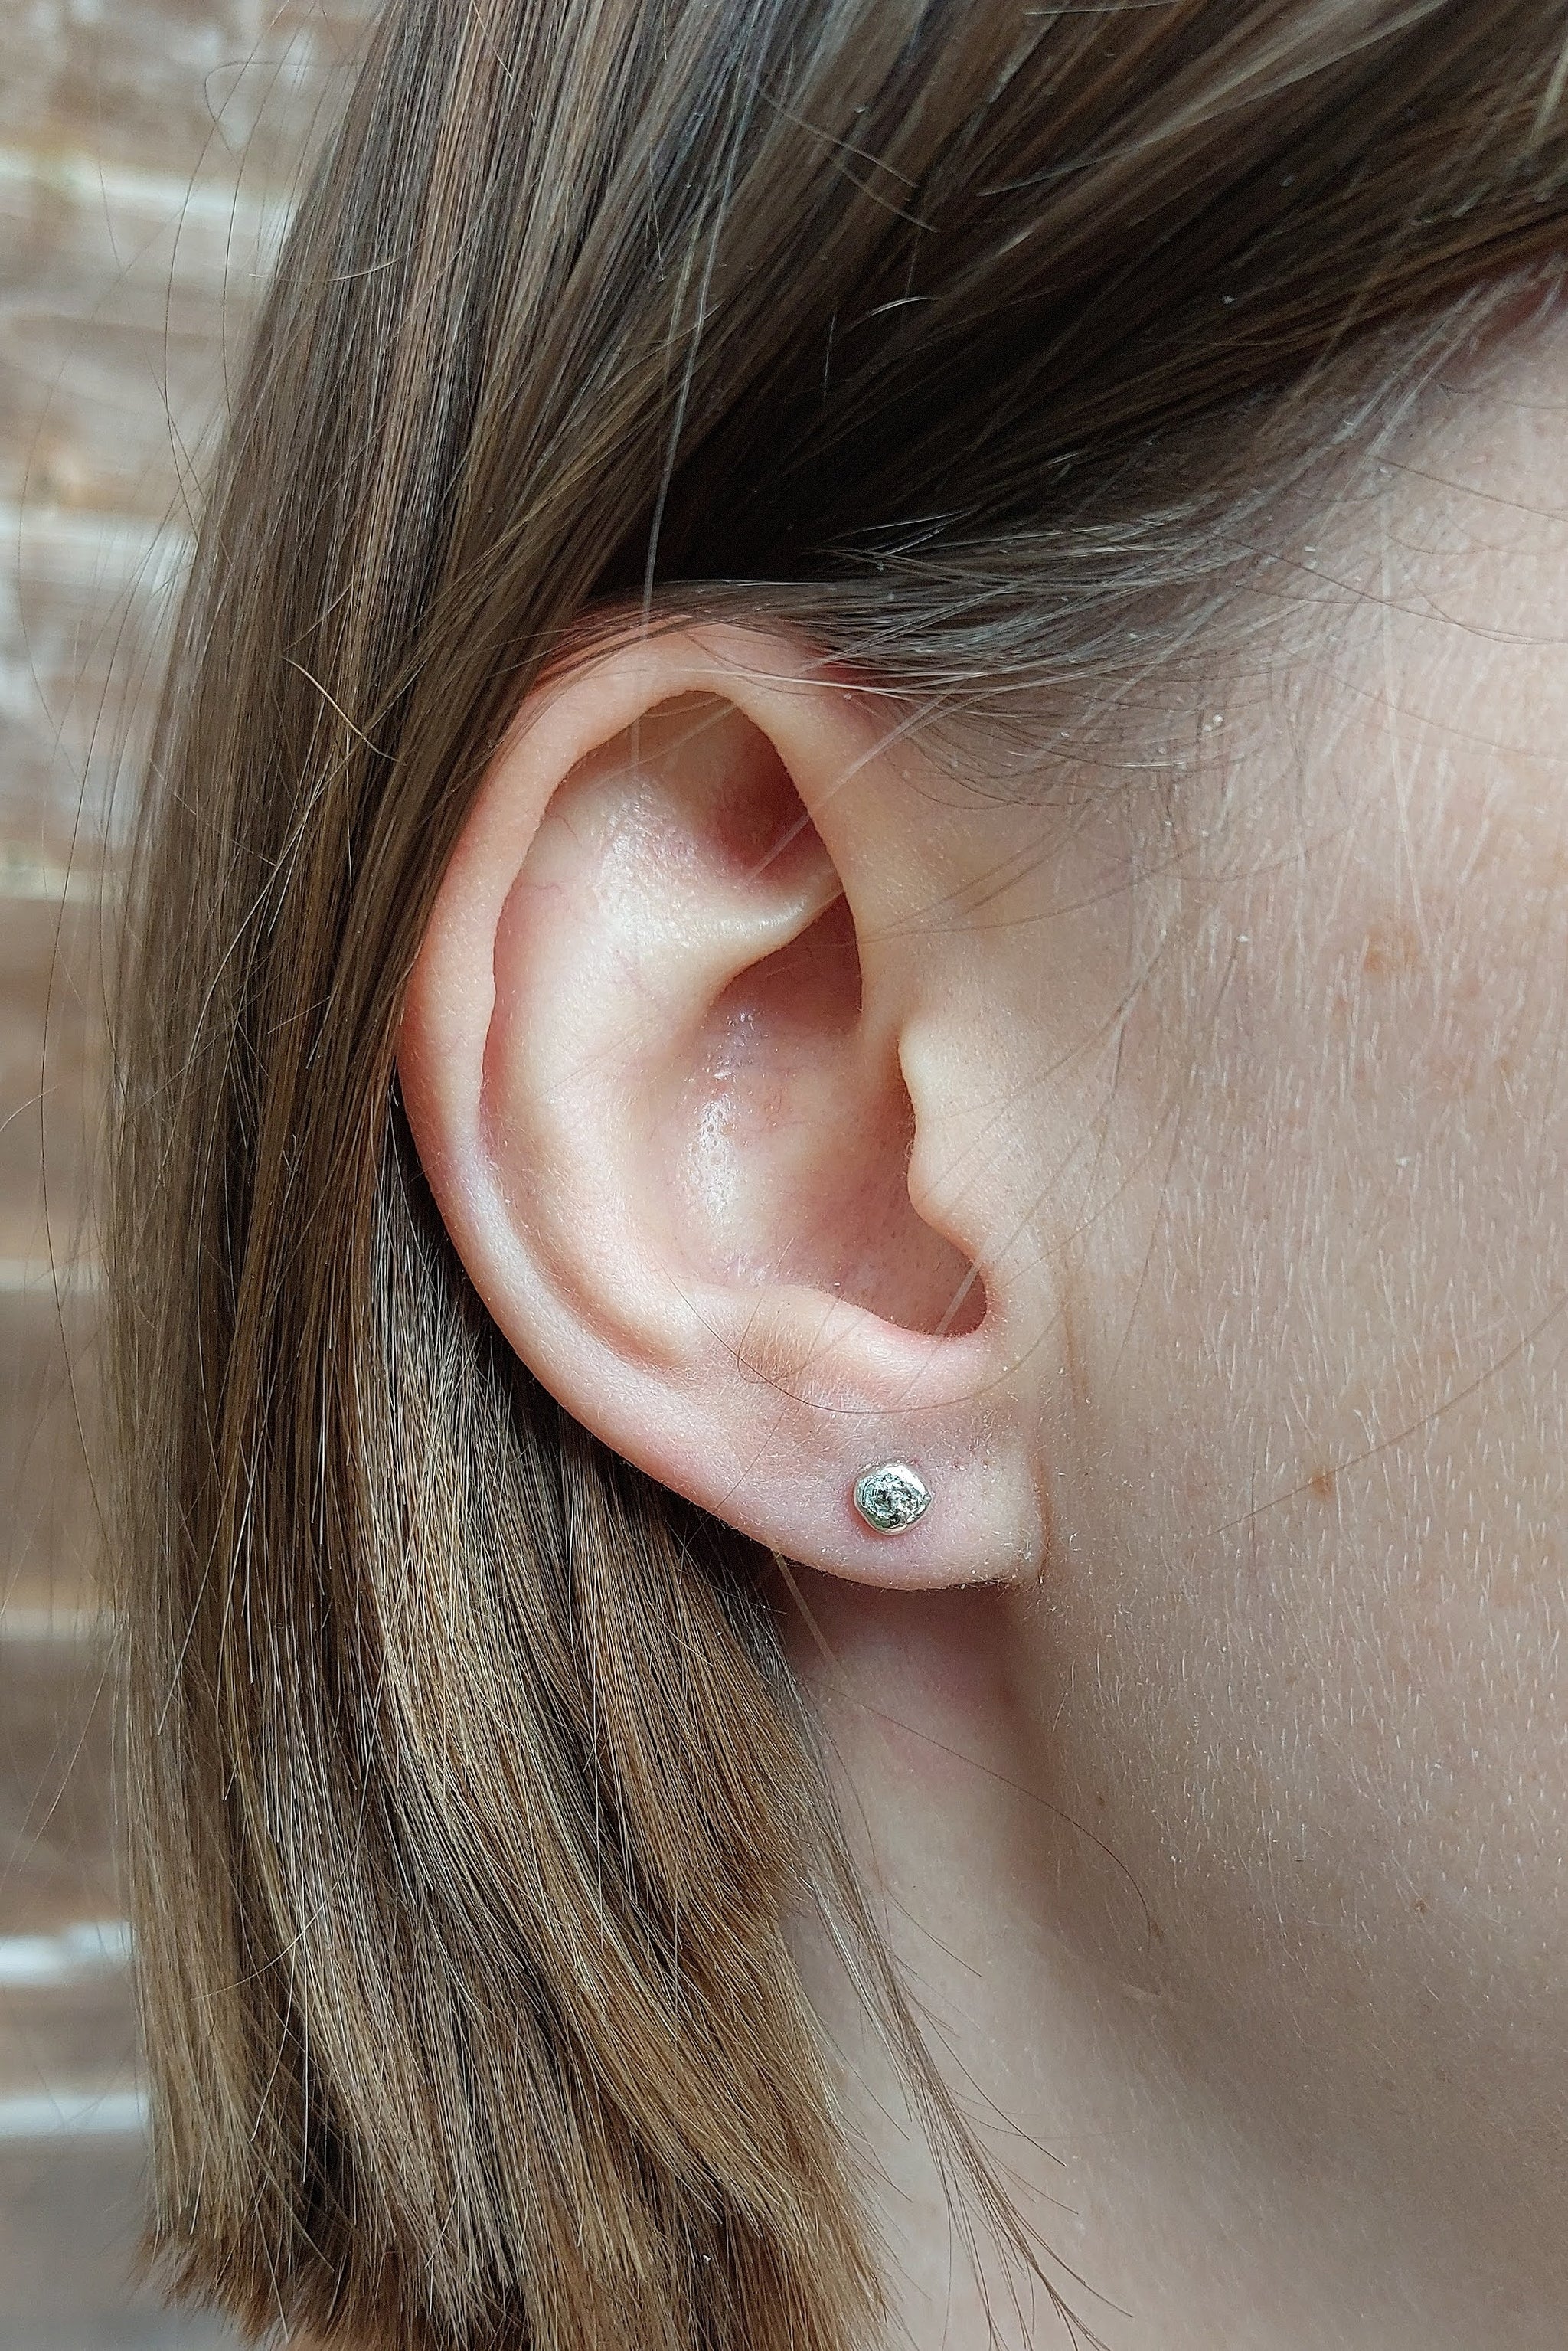 sea inspired stud earrings, pebble earrings in 100% recycled sterling silver